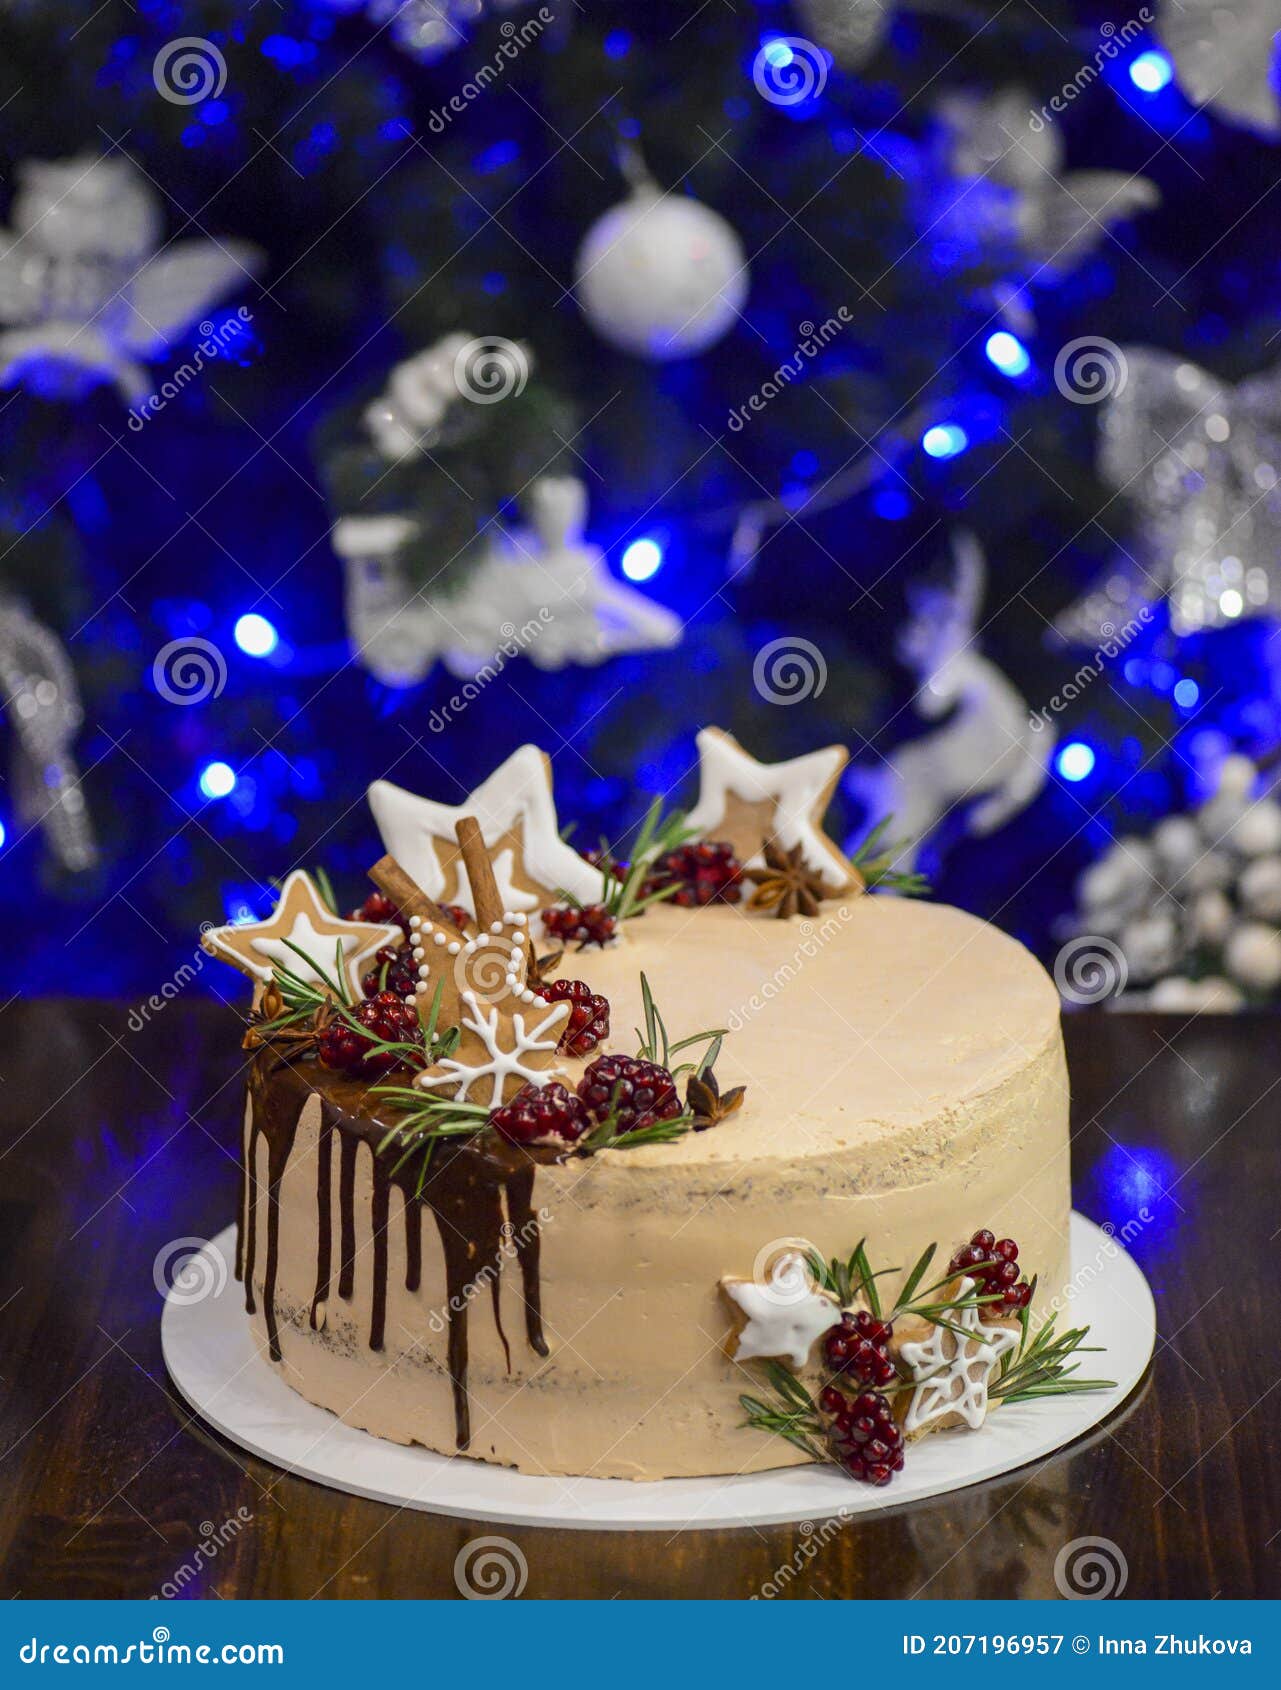 Pastel De Navidad Con Decoraciones Navideñas De Invierno árbol De Navidad  Al Fondo Imagen de archivo - Imagen de rojo, alimento: 207196957